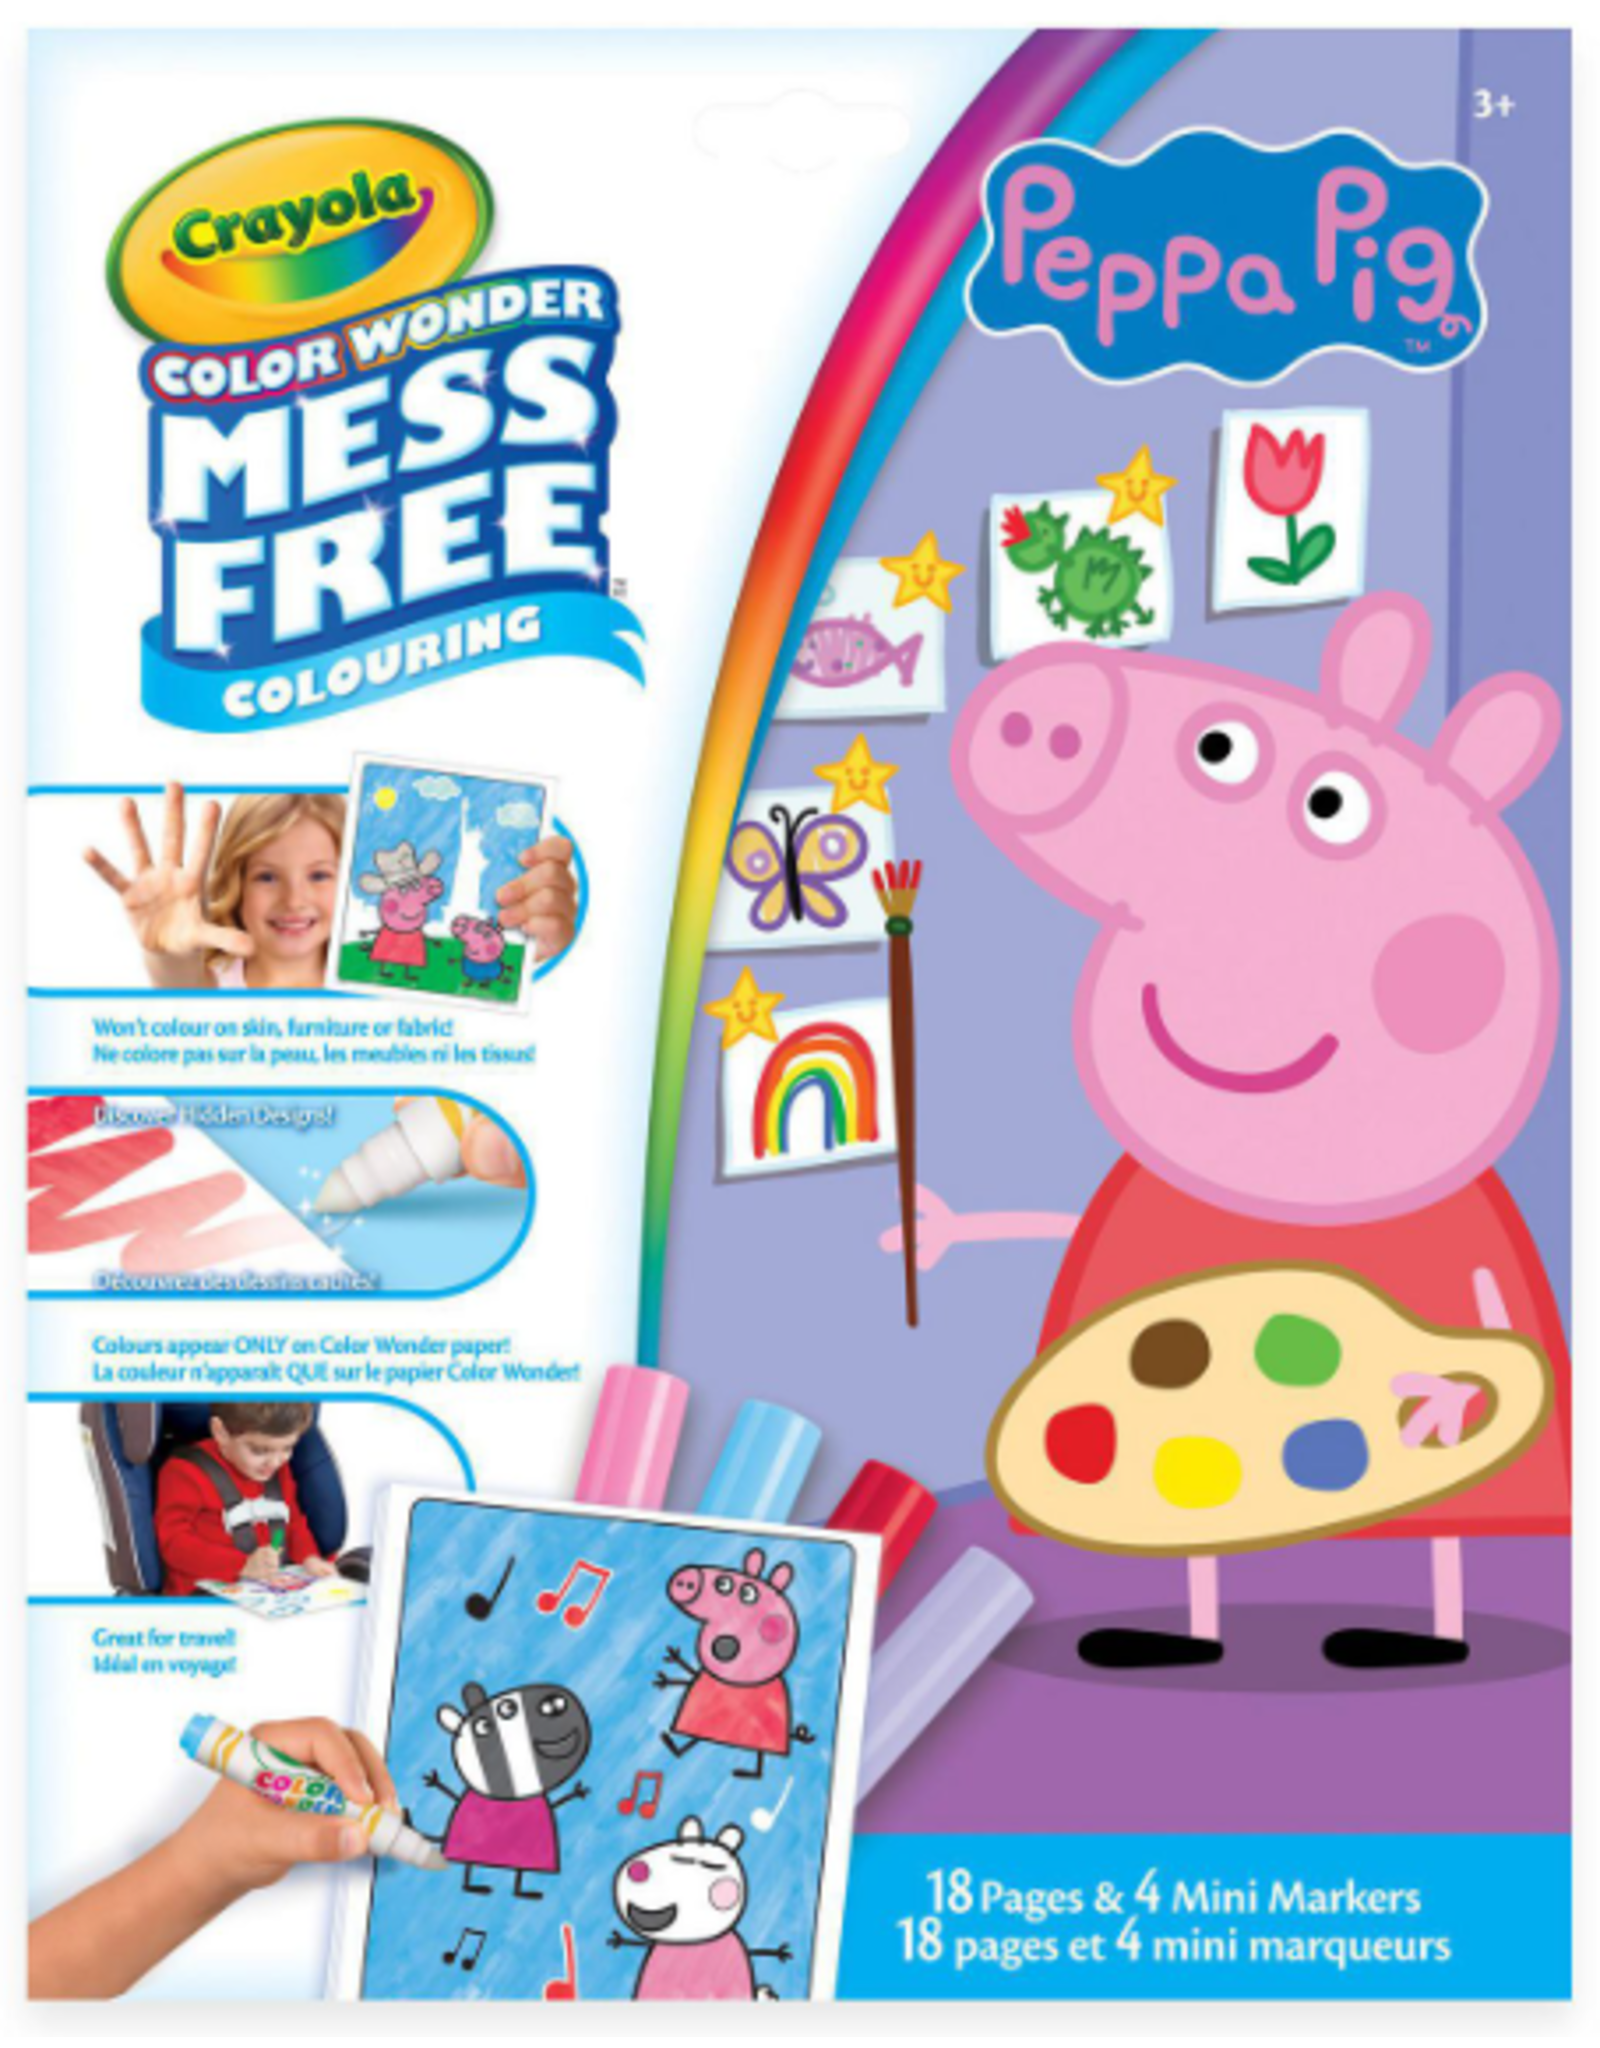 Crayola CW Mess Free - Peppa Pig